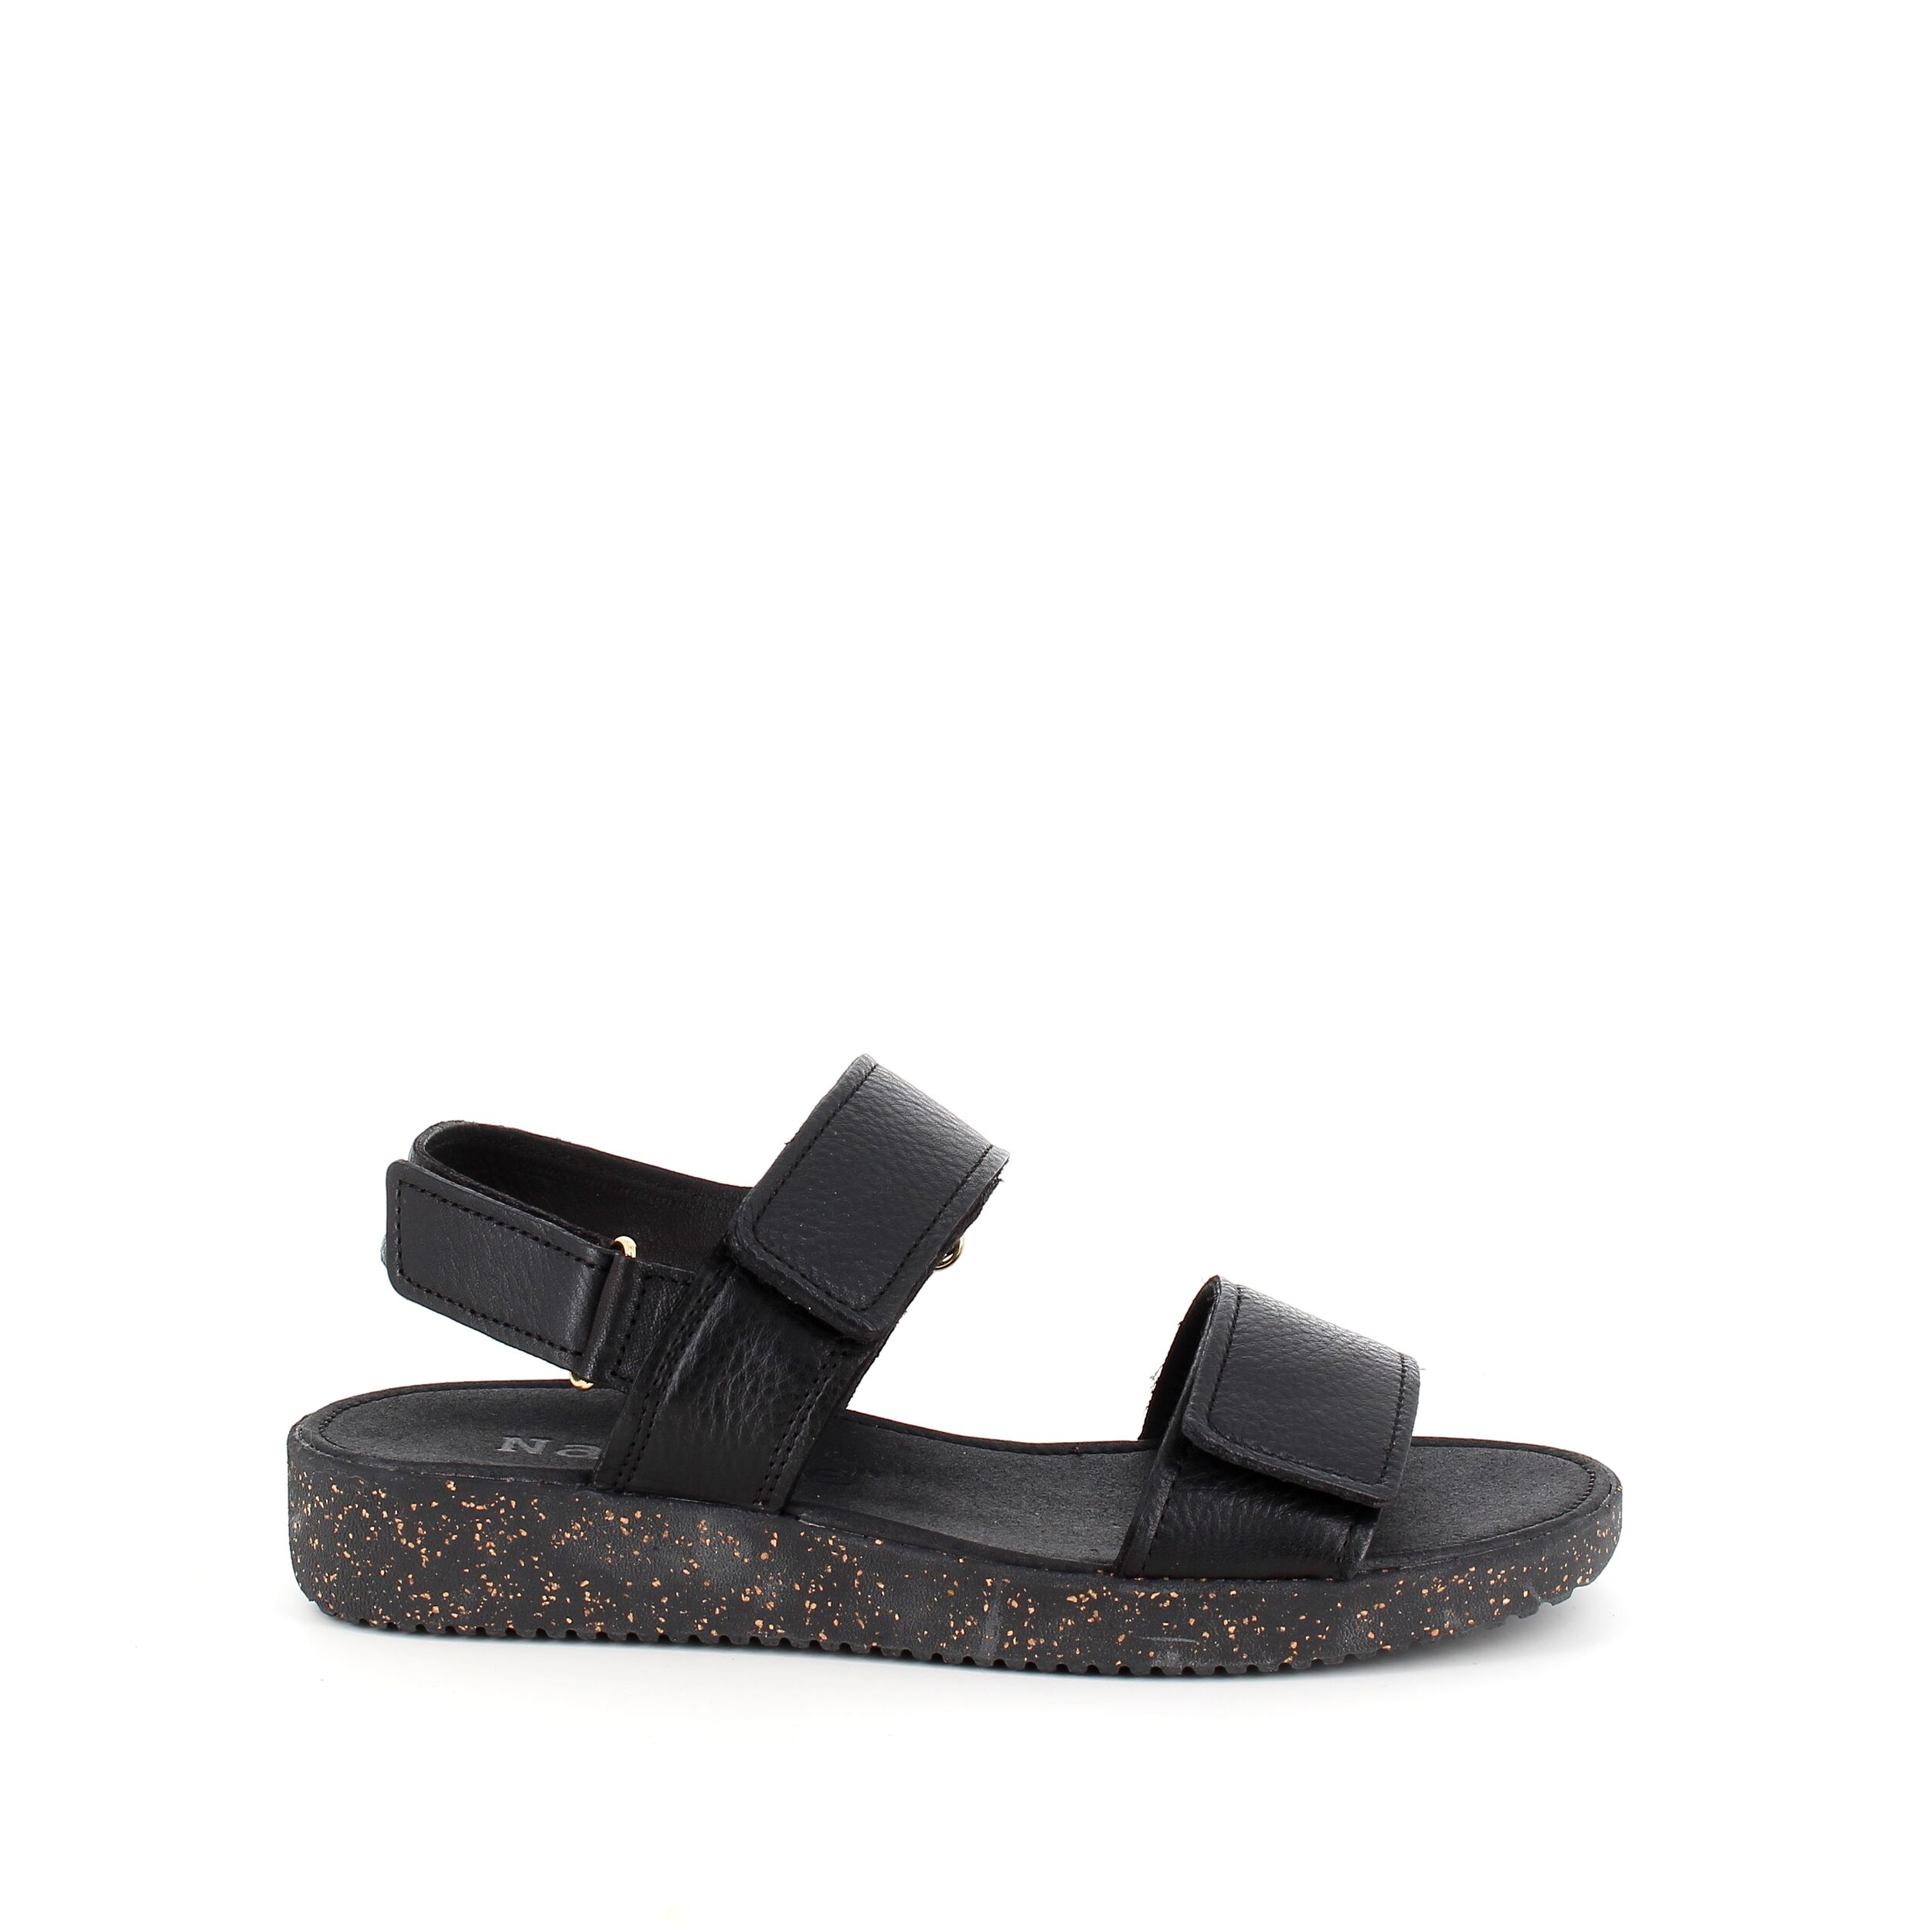 Se Nature sandal i sort skind med sorte såler - 42 hos Sygeplejebutikken.dk